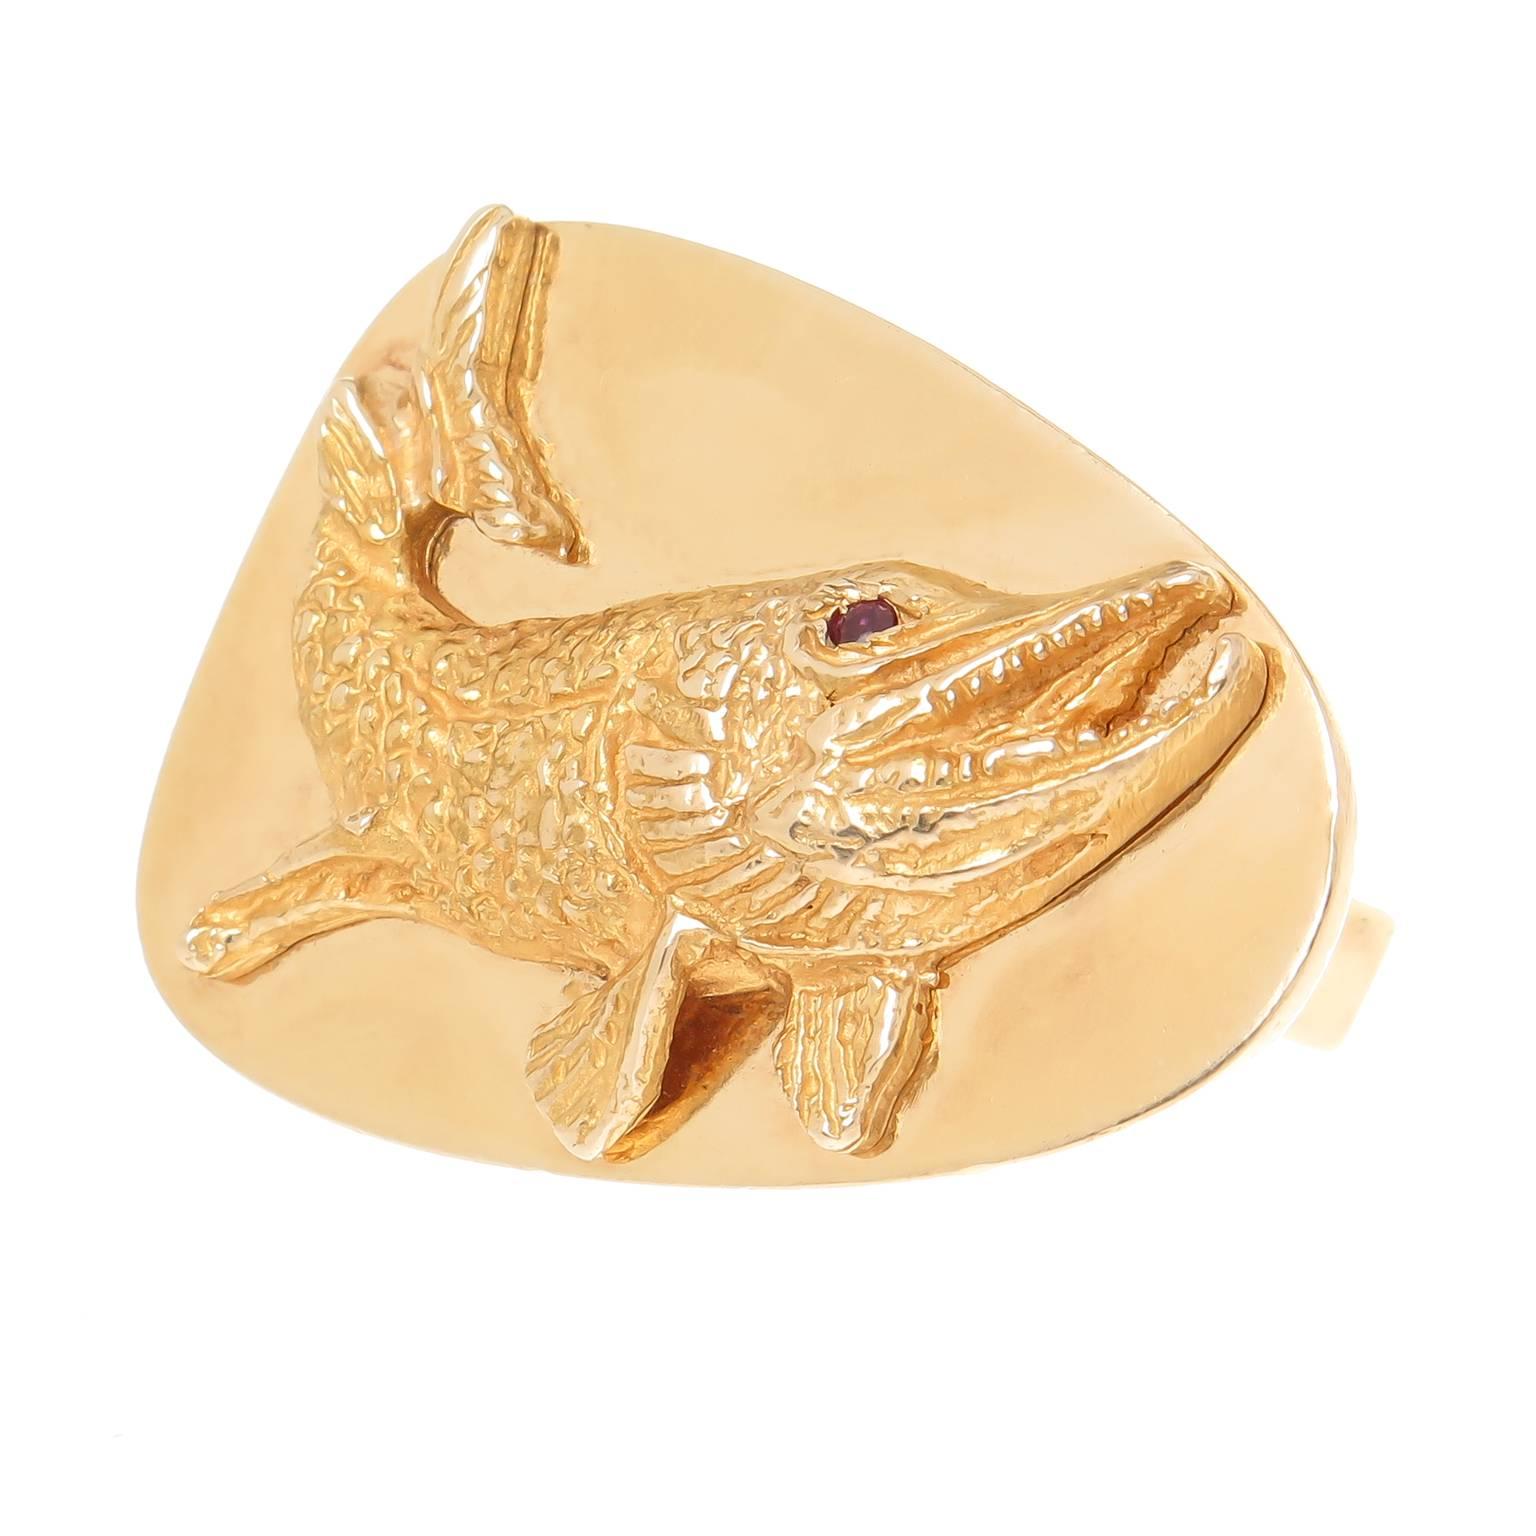 Circa 1970er Tiffany & Company 14K Gelbgold Fisch Manschettenknöpfe, Messung 1 3/16 Zoll in der Länge und 7/8 Zoll breit und mit schön detailliert, angewendet Fisch mit strukturierten Oberfläche und Rubin Augen. Wird mit Tiffany-Etui geliefert.